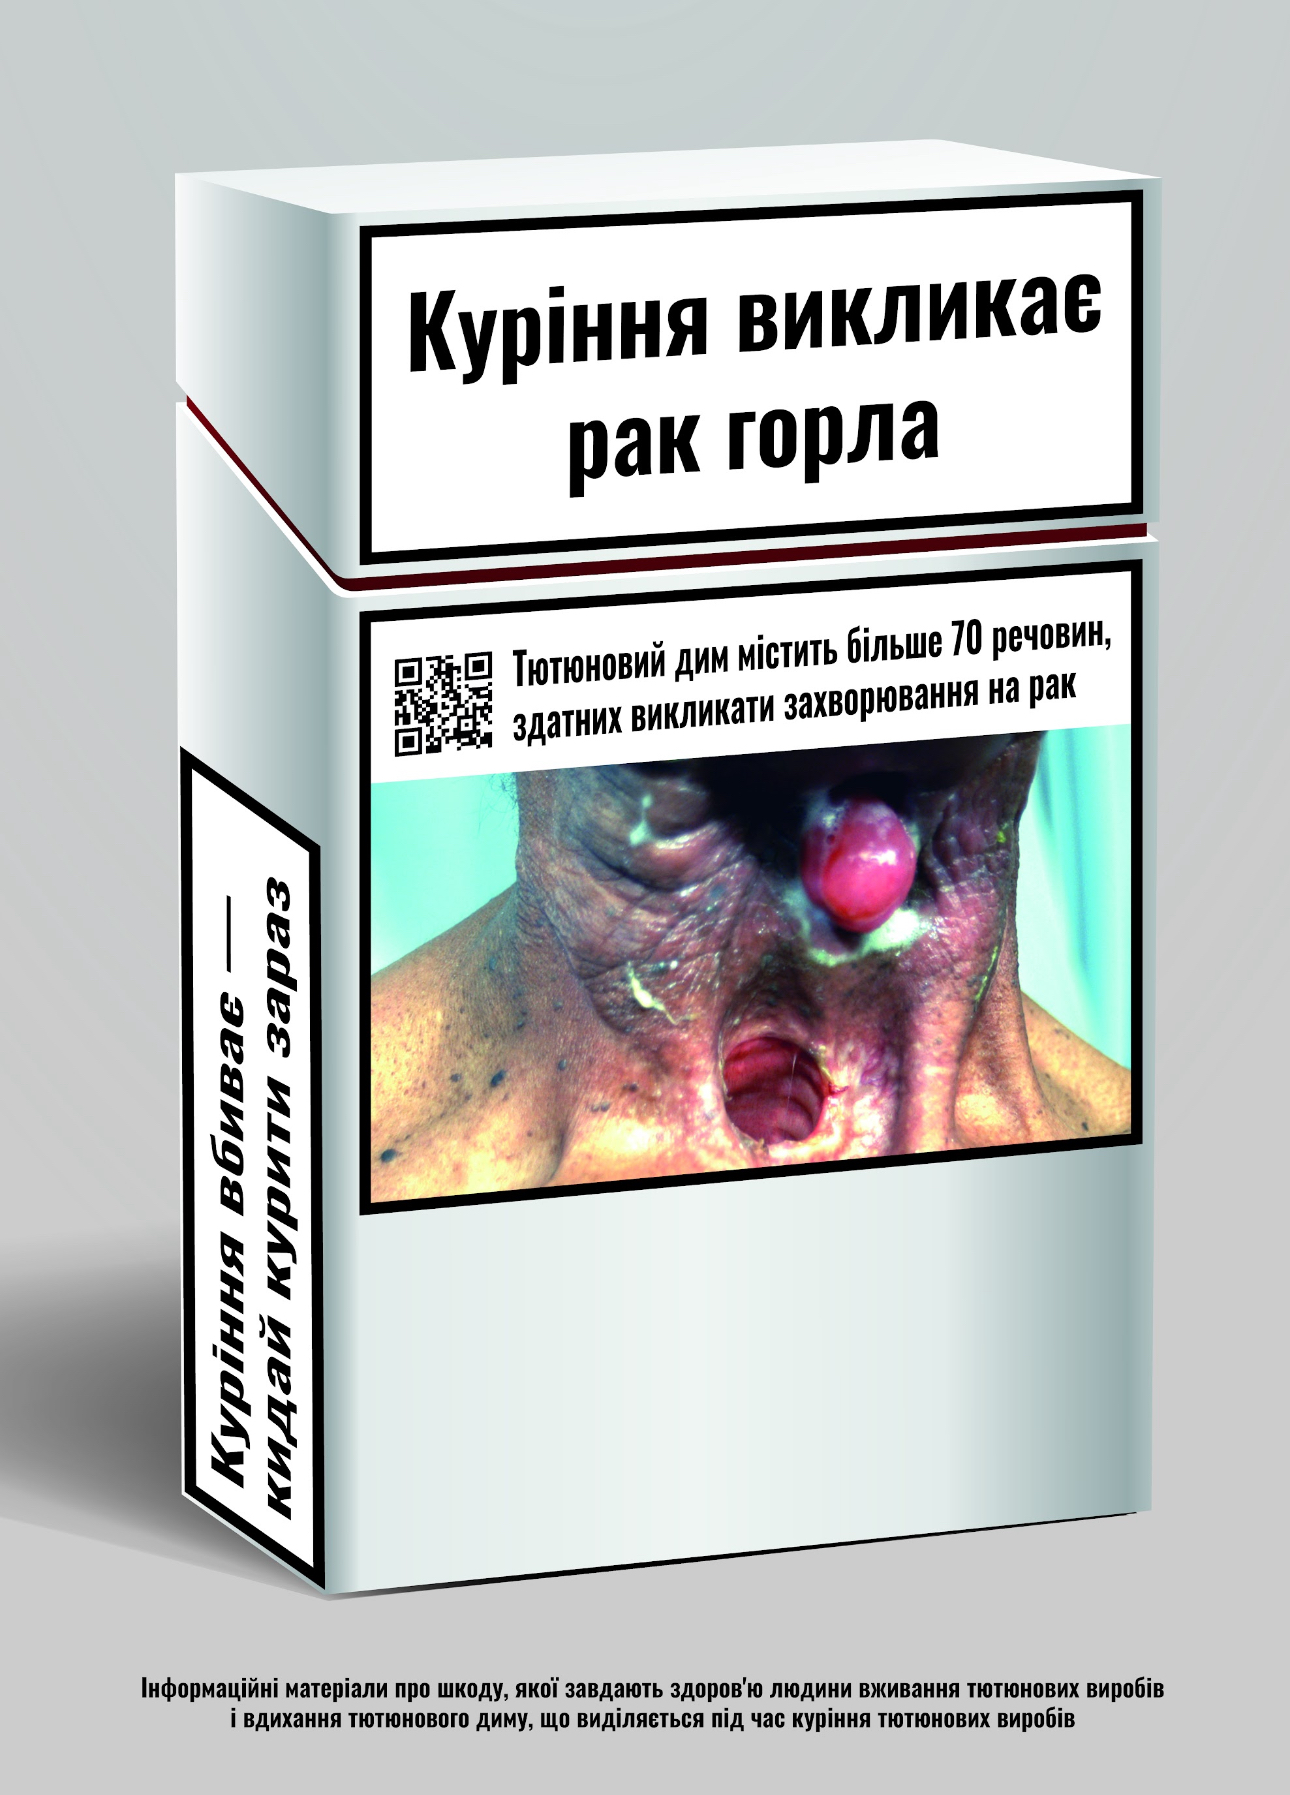 На пачках цигарок з'явилися кольорові фото хвороб: “Українці будуть менше палити“